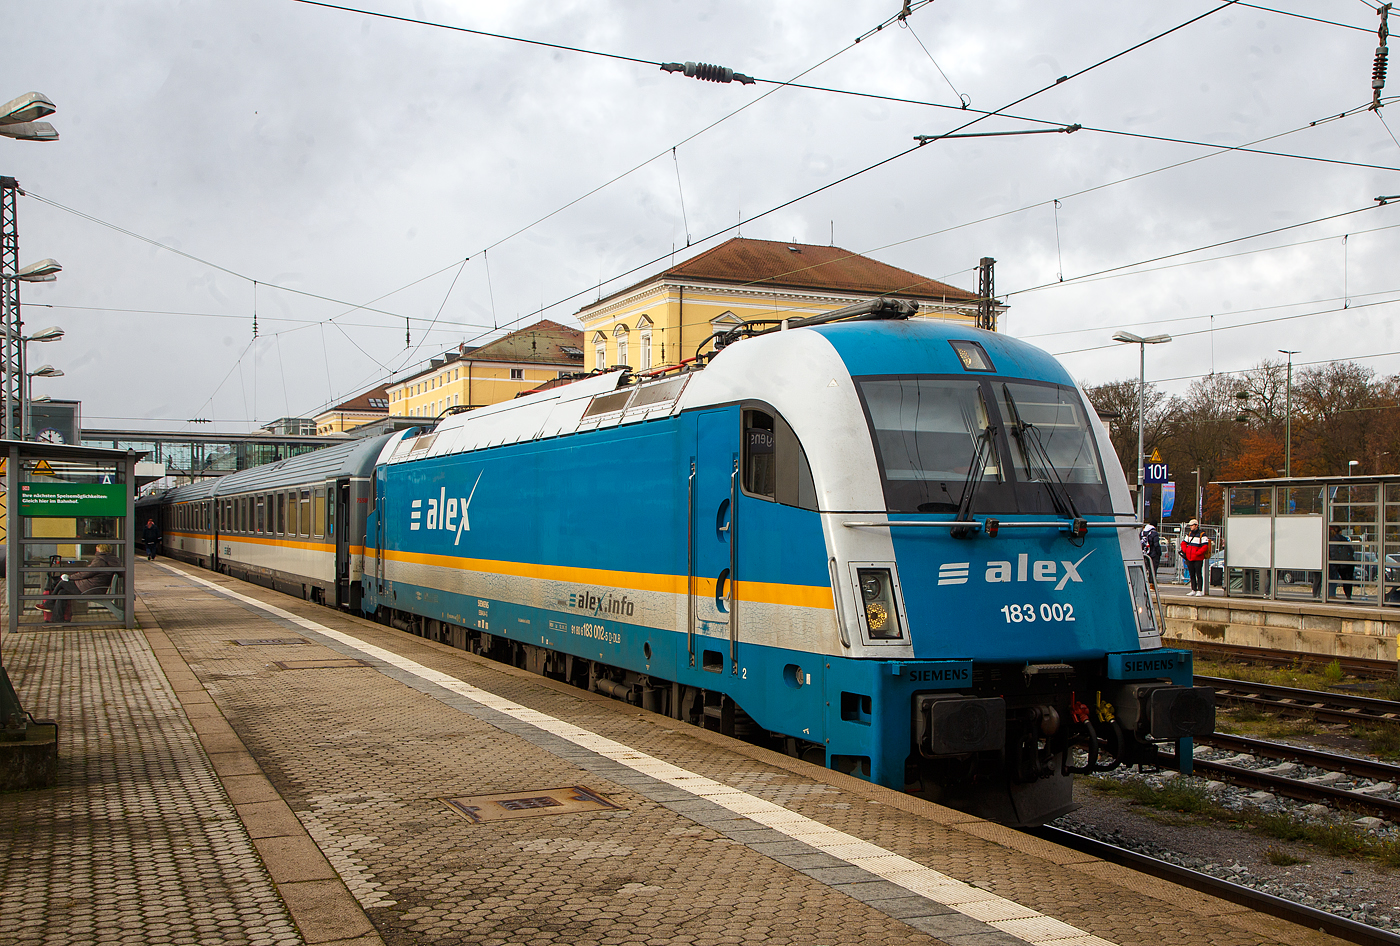 Die alex 183 002-5 (91 80 6183 002-5 D-DLB) der Die Länderbahn GmbH DLB (geleast über die HANNOVER LEASING GmbH & Co. KG) hat am 24.11.2022 im Hauptbahnhof Regensburg, den alex RE 25 (Schwandorf – Regensburg – München), übernommen und wir ihn gleich über Landshut nach München ziehen.

Die SIEMENS ES64U4-G (Taurus 3) wurde 2007 von Siemens Mobilitiy in München-Allach unter der Fabriknummer 21132 gebaut. Die Lok in der Variante G hat die Zulassung für Deutschland und Österreich (D/A). Diese ES64U4-G Lokomotiven sind reine Wechselstromlokomotiven für 15 kV/16,7 Hz und 25 kV/50 Hz, so hat sie auch ein geringeres Dienstgewicht von 86 t.

Die Lok entspricht im elektrischen und elektronischen Teil zwar weitgehend der Siemens ES64F4, sieht von außen jedoch weitgehend wie eine ES64U2 (ÖBB 1116 / DB 182) aus. 

Die Detailänderungen sind:
Der Wagenkasten ist um 300 mm länger;
vier konventionelle Türen, statt zwei und Notausstiege;
Verkleidung der Dachaufbauten;
gegenüber der 1116 abgesenkter Dachmittelteil, um das Lichtraumprofil nach UIC 505 einzuhalten;
LED-Beleuchtung wie bei BR 189/ES64F4;
Griffstange für den Rangierer bis zu den Ecken gezogen und
das vom Vorgänger ES64U2 bekannte Anfahrgeräusch mit dorischer Tonleiter ist entfallen.

Um Masse zu sparen, wurde der Haupttransformator 2,5 Tonnen leichter ausgeführt. Deshalb ist die maximale Leistung der Lok etwas kleiner als die der Vorgängerbaureihe: Dauerleistung 6 MW, Stundenleistung 6,4 MW.

TECHNISCHE DATEN: 
Spurweite: 1.435 mm
Achsanordnung:  Bo`Bo`
Länge über Puffer: 19.580 mm
Drehzapfenabstand: 9.900 mm
Achsabstand Drehgestell: 3.000 mm
Treibraddurchmesser: 1.150 mm (neu) / 1.070 mm (abgenutzt9
Dienstgewicht: 86 t
Dauerleistung:  6.000 kW 
Größte Leistung (Booster für 5 Minuten): 6.400 kW
Anfahrzugkraft 300 kN
Dauerzugkraft: 250 kN
Leistung der dynamischen Bremse: 6.000 kW (6.400 kW mit Booster)
Max. Bremskraft der elektrische dynamischen Bremse: 240 kN
Oberspannungen/Frequenz: 15 kV 16 2/3Hz und 25 kV 50 Hz
Höchstgeschwindigkeit: 230 km/h
Bauart der Bremsen:  KE-GPR-E mZ (D)
Antrieb: Kardan-Hohlwellen-Antrieb
elektr. Antrieb:  4 Stück Hohlwellen-Drehstrom- Asynchron-Fahrmotoren
kleinster befahrbarer Krümmungsradius: 90m
